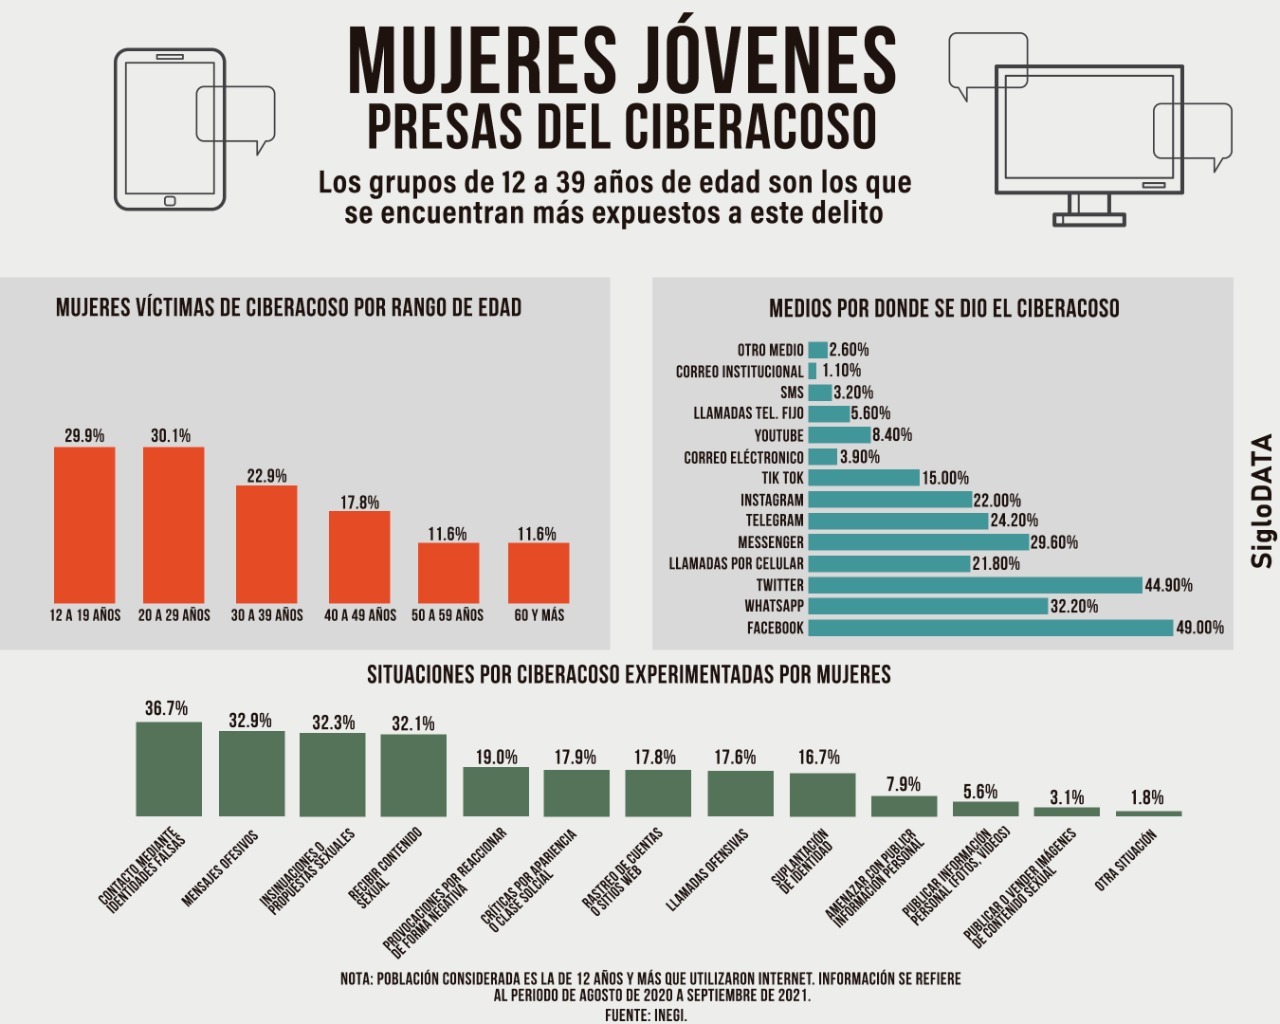 La mayor prevalencia de ciberacoso se registró en Michoacán con 28.8 %, le siguen Guerrero y Oaxaca con 26.8 y 26.4 %